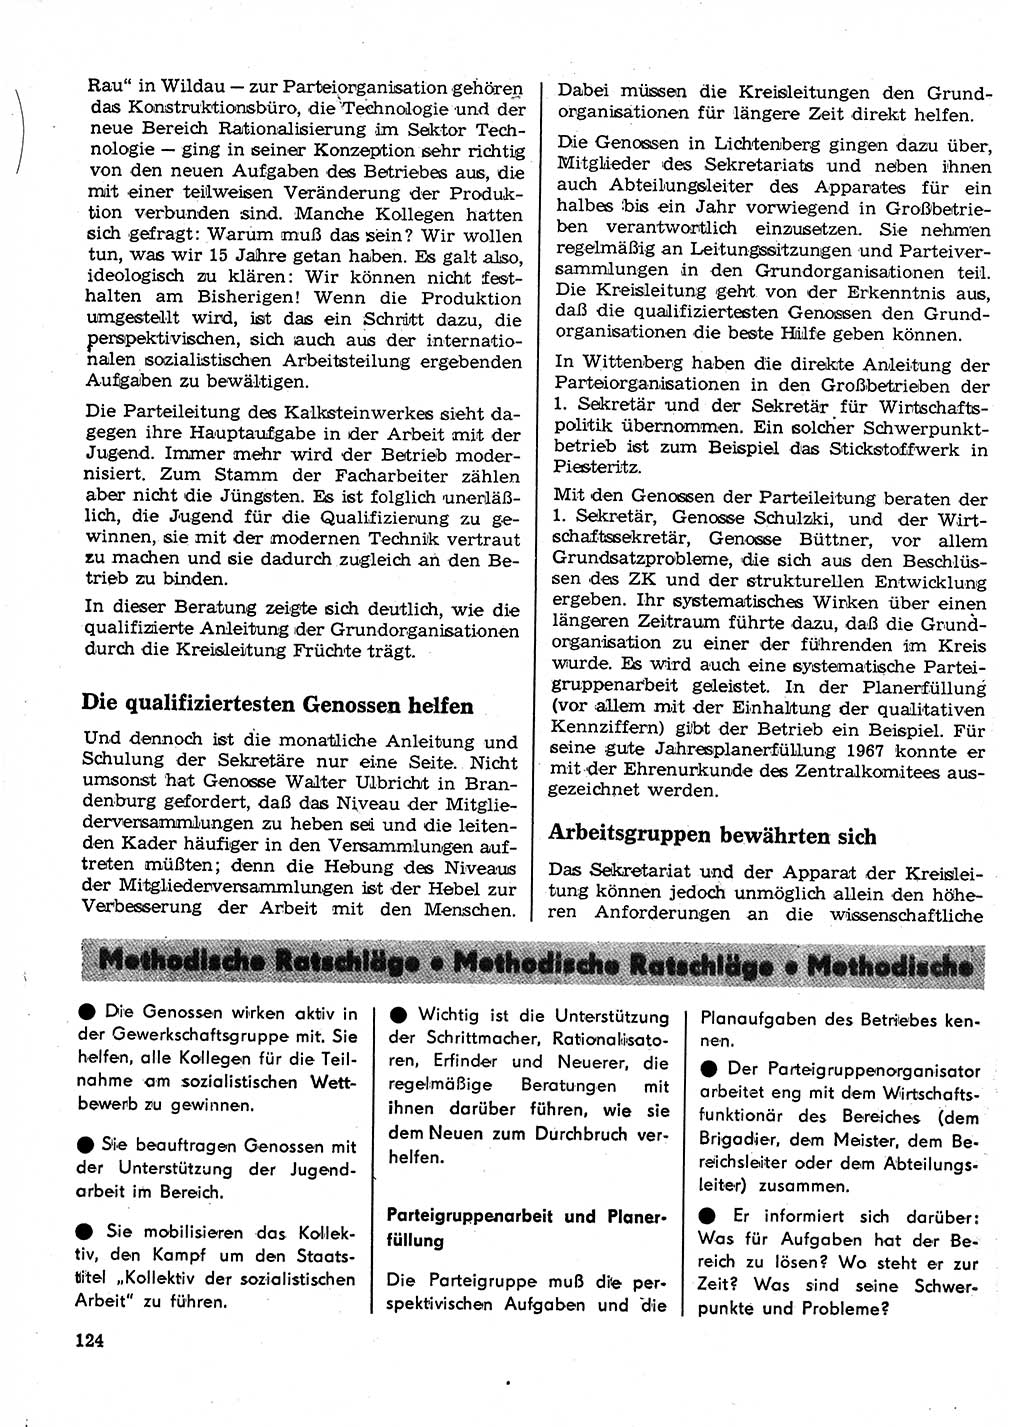 Neuer Weg (NW), Organ des Zentralkomitees (ZK) der SED (Sozialistische Einheitspartei Deutschlands) für Fragen des Parteilebens, 23. Jahrgang [Deutsche Demokratische Republik (DDR)] 1968, Seite 124 (NW ZK SED DDR 1968, S. 124)